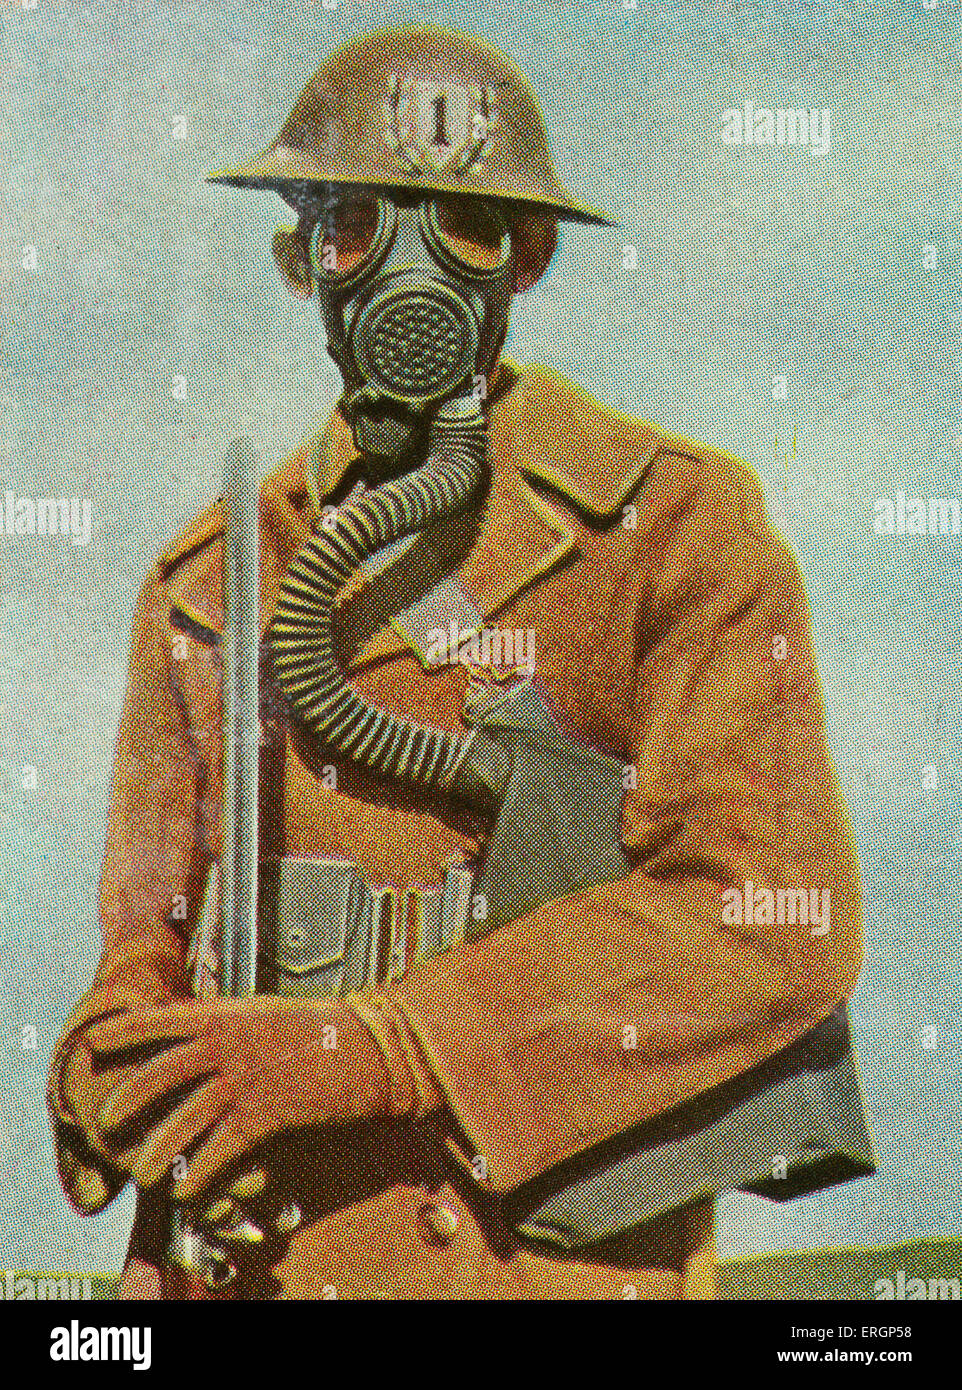 Le maschere antigas: American fantassin con acciaio casco, attaccato a baionetta e maschera a gas. (Fonte: carte di sigaretta pubblicato in Foto Stock